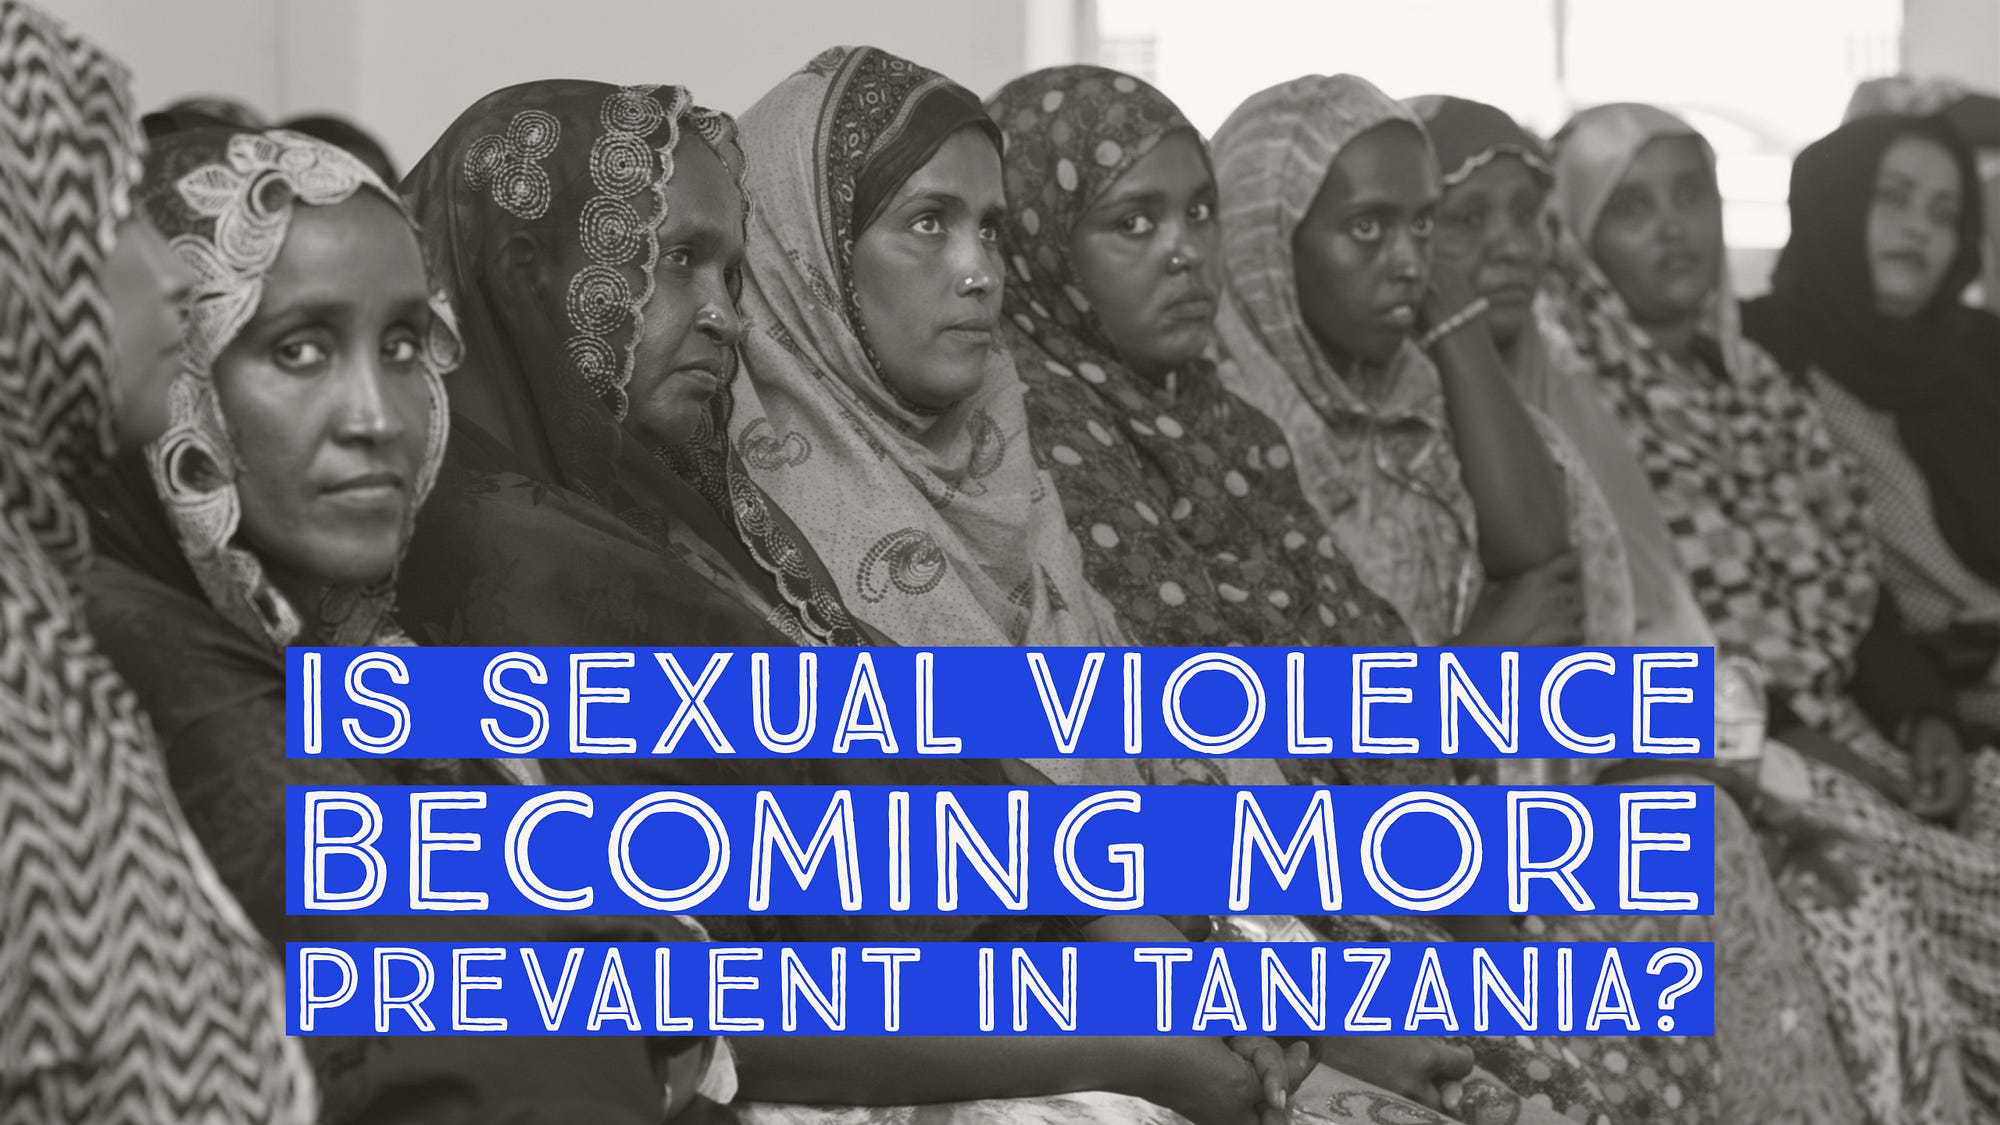 Î‘Ï€Î¿Ï„Î­Î»ÎµÏƒÎ¼Î± ÎµÎ¹ÎºÏŒÎ½Î±Ï‚ Î³Î¹Î± Tanzania, violent crime is common